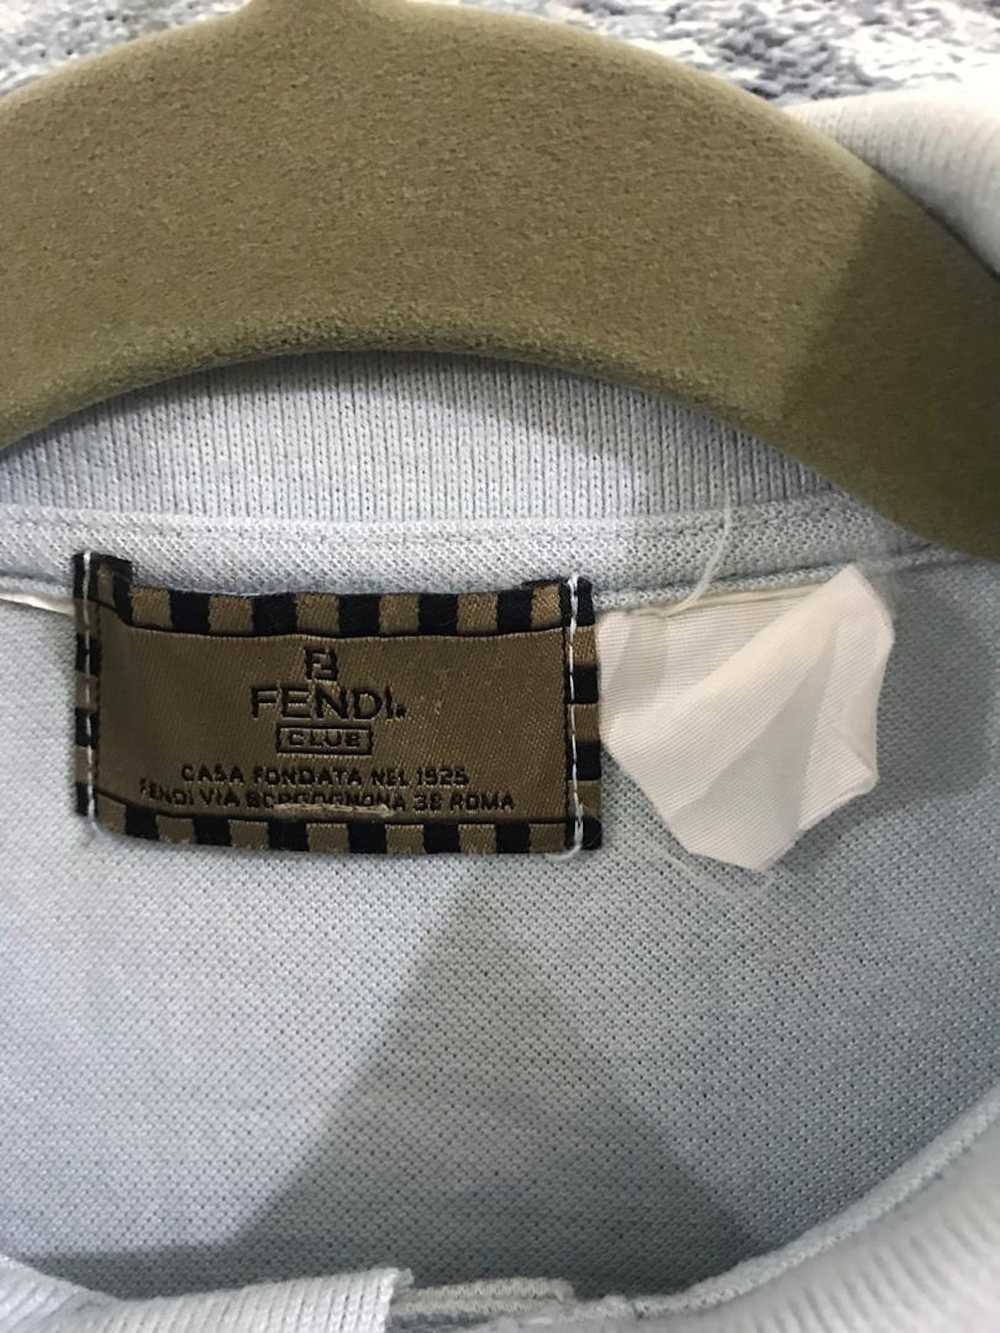 Fendi Fendi Shirt - image 6